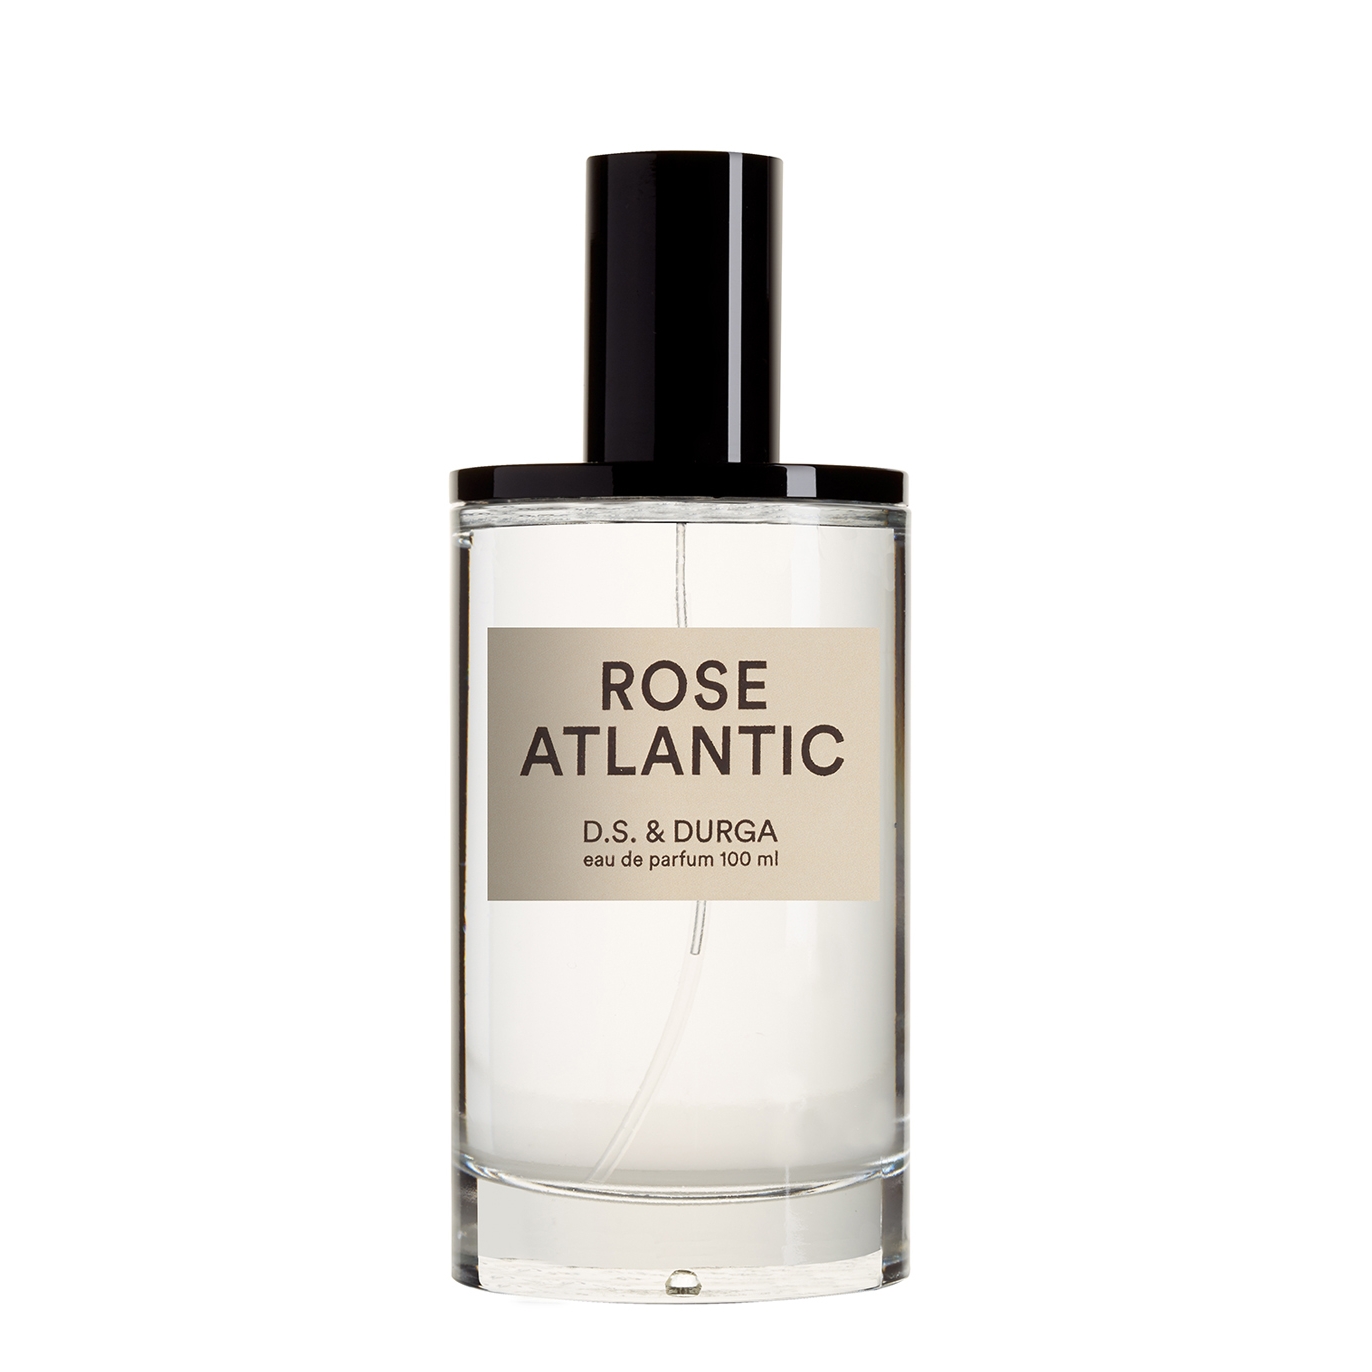 D.S. & Durga Rose Atlantic Eau De Parfum 100ml